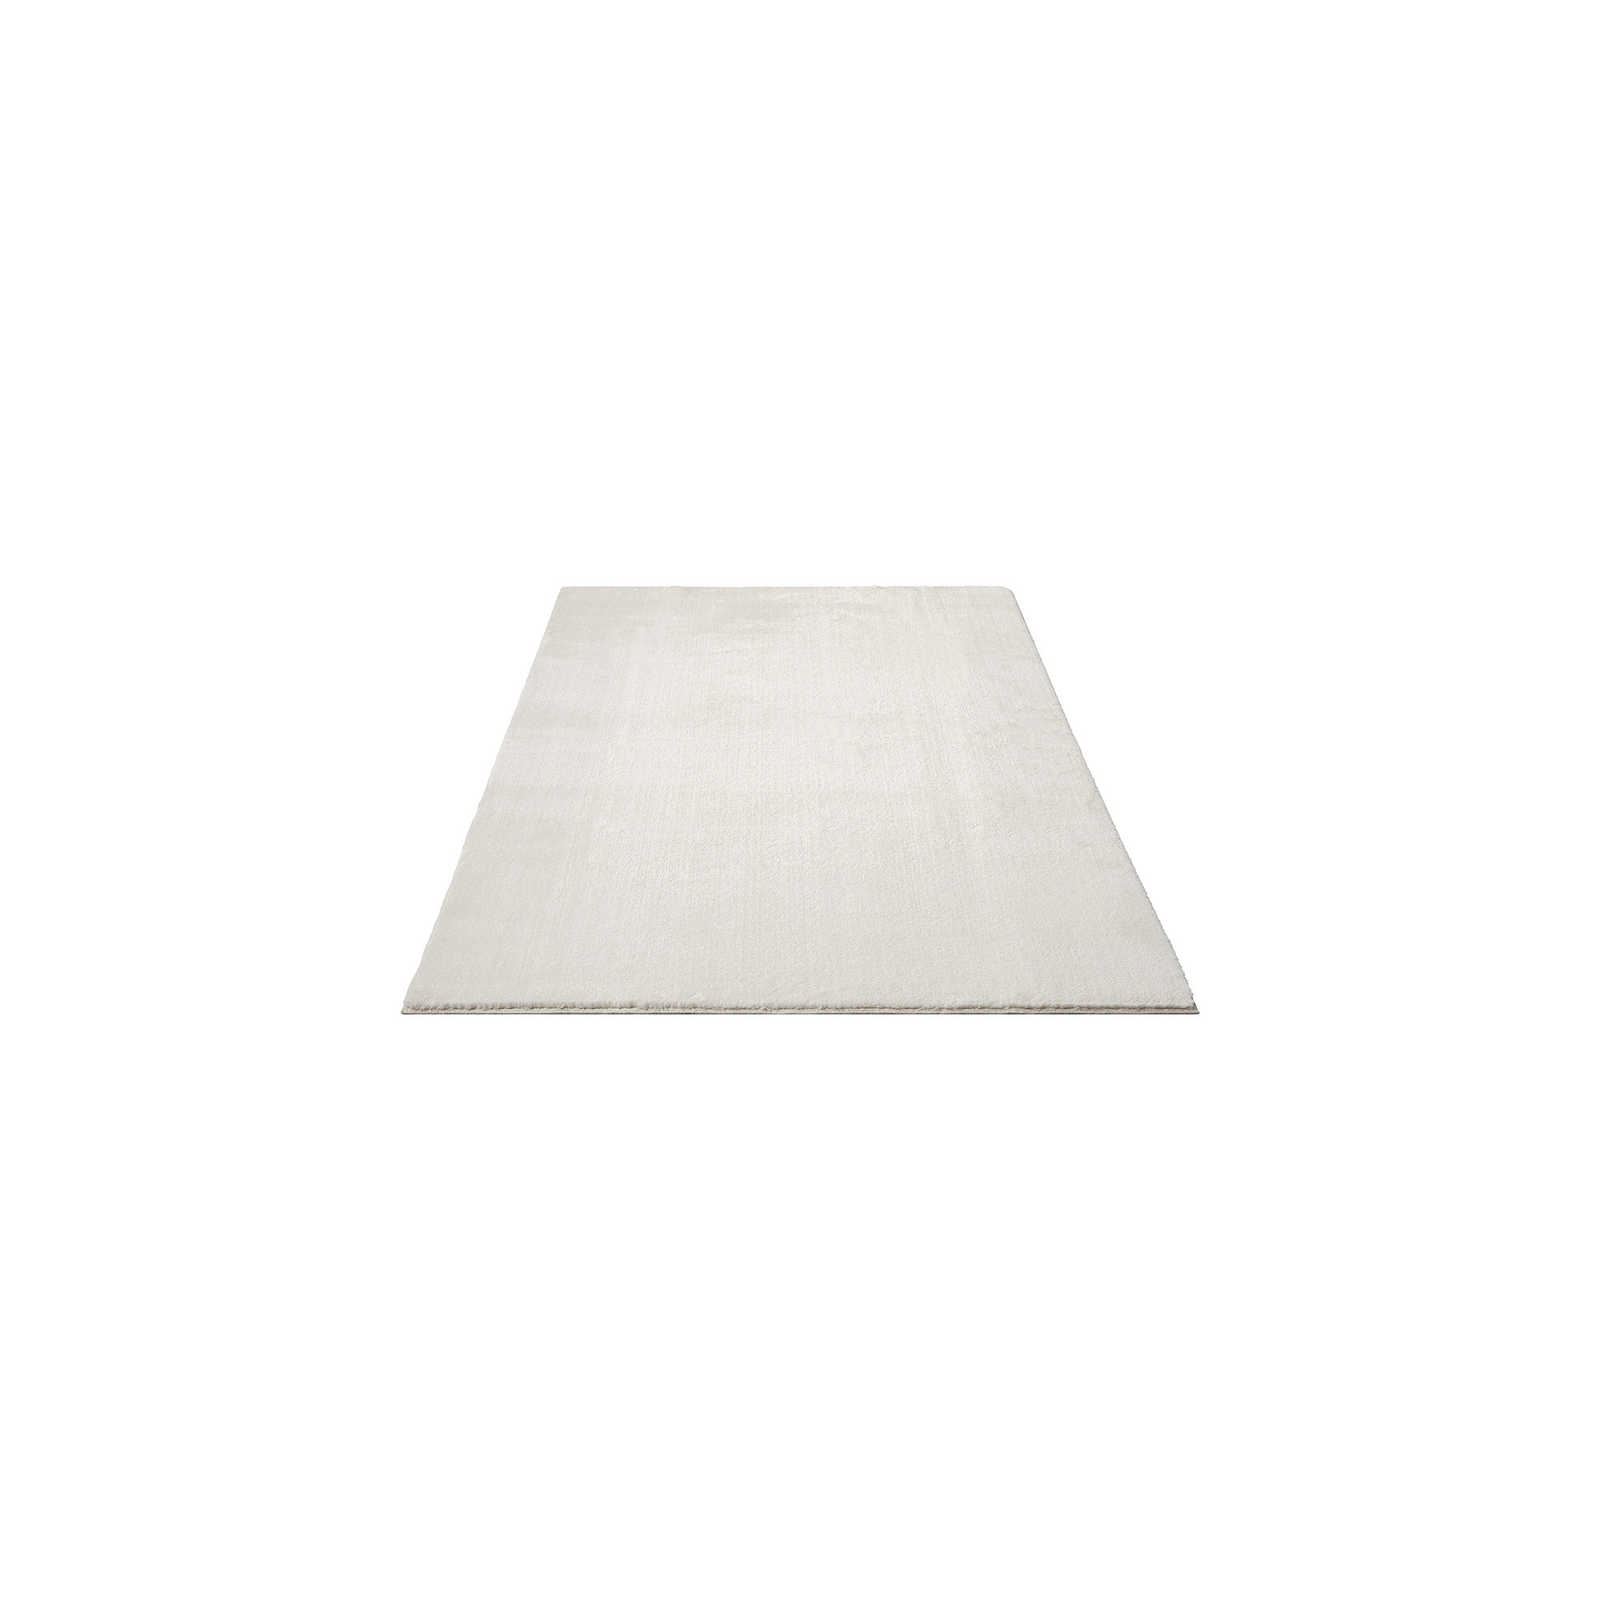 Fashionable high pile carpet in cream - 170 x 120 cm
